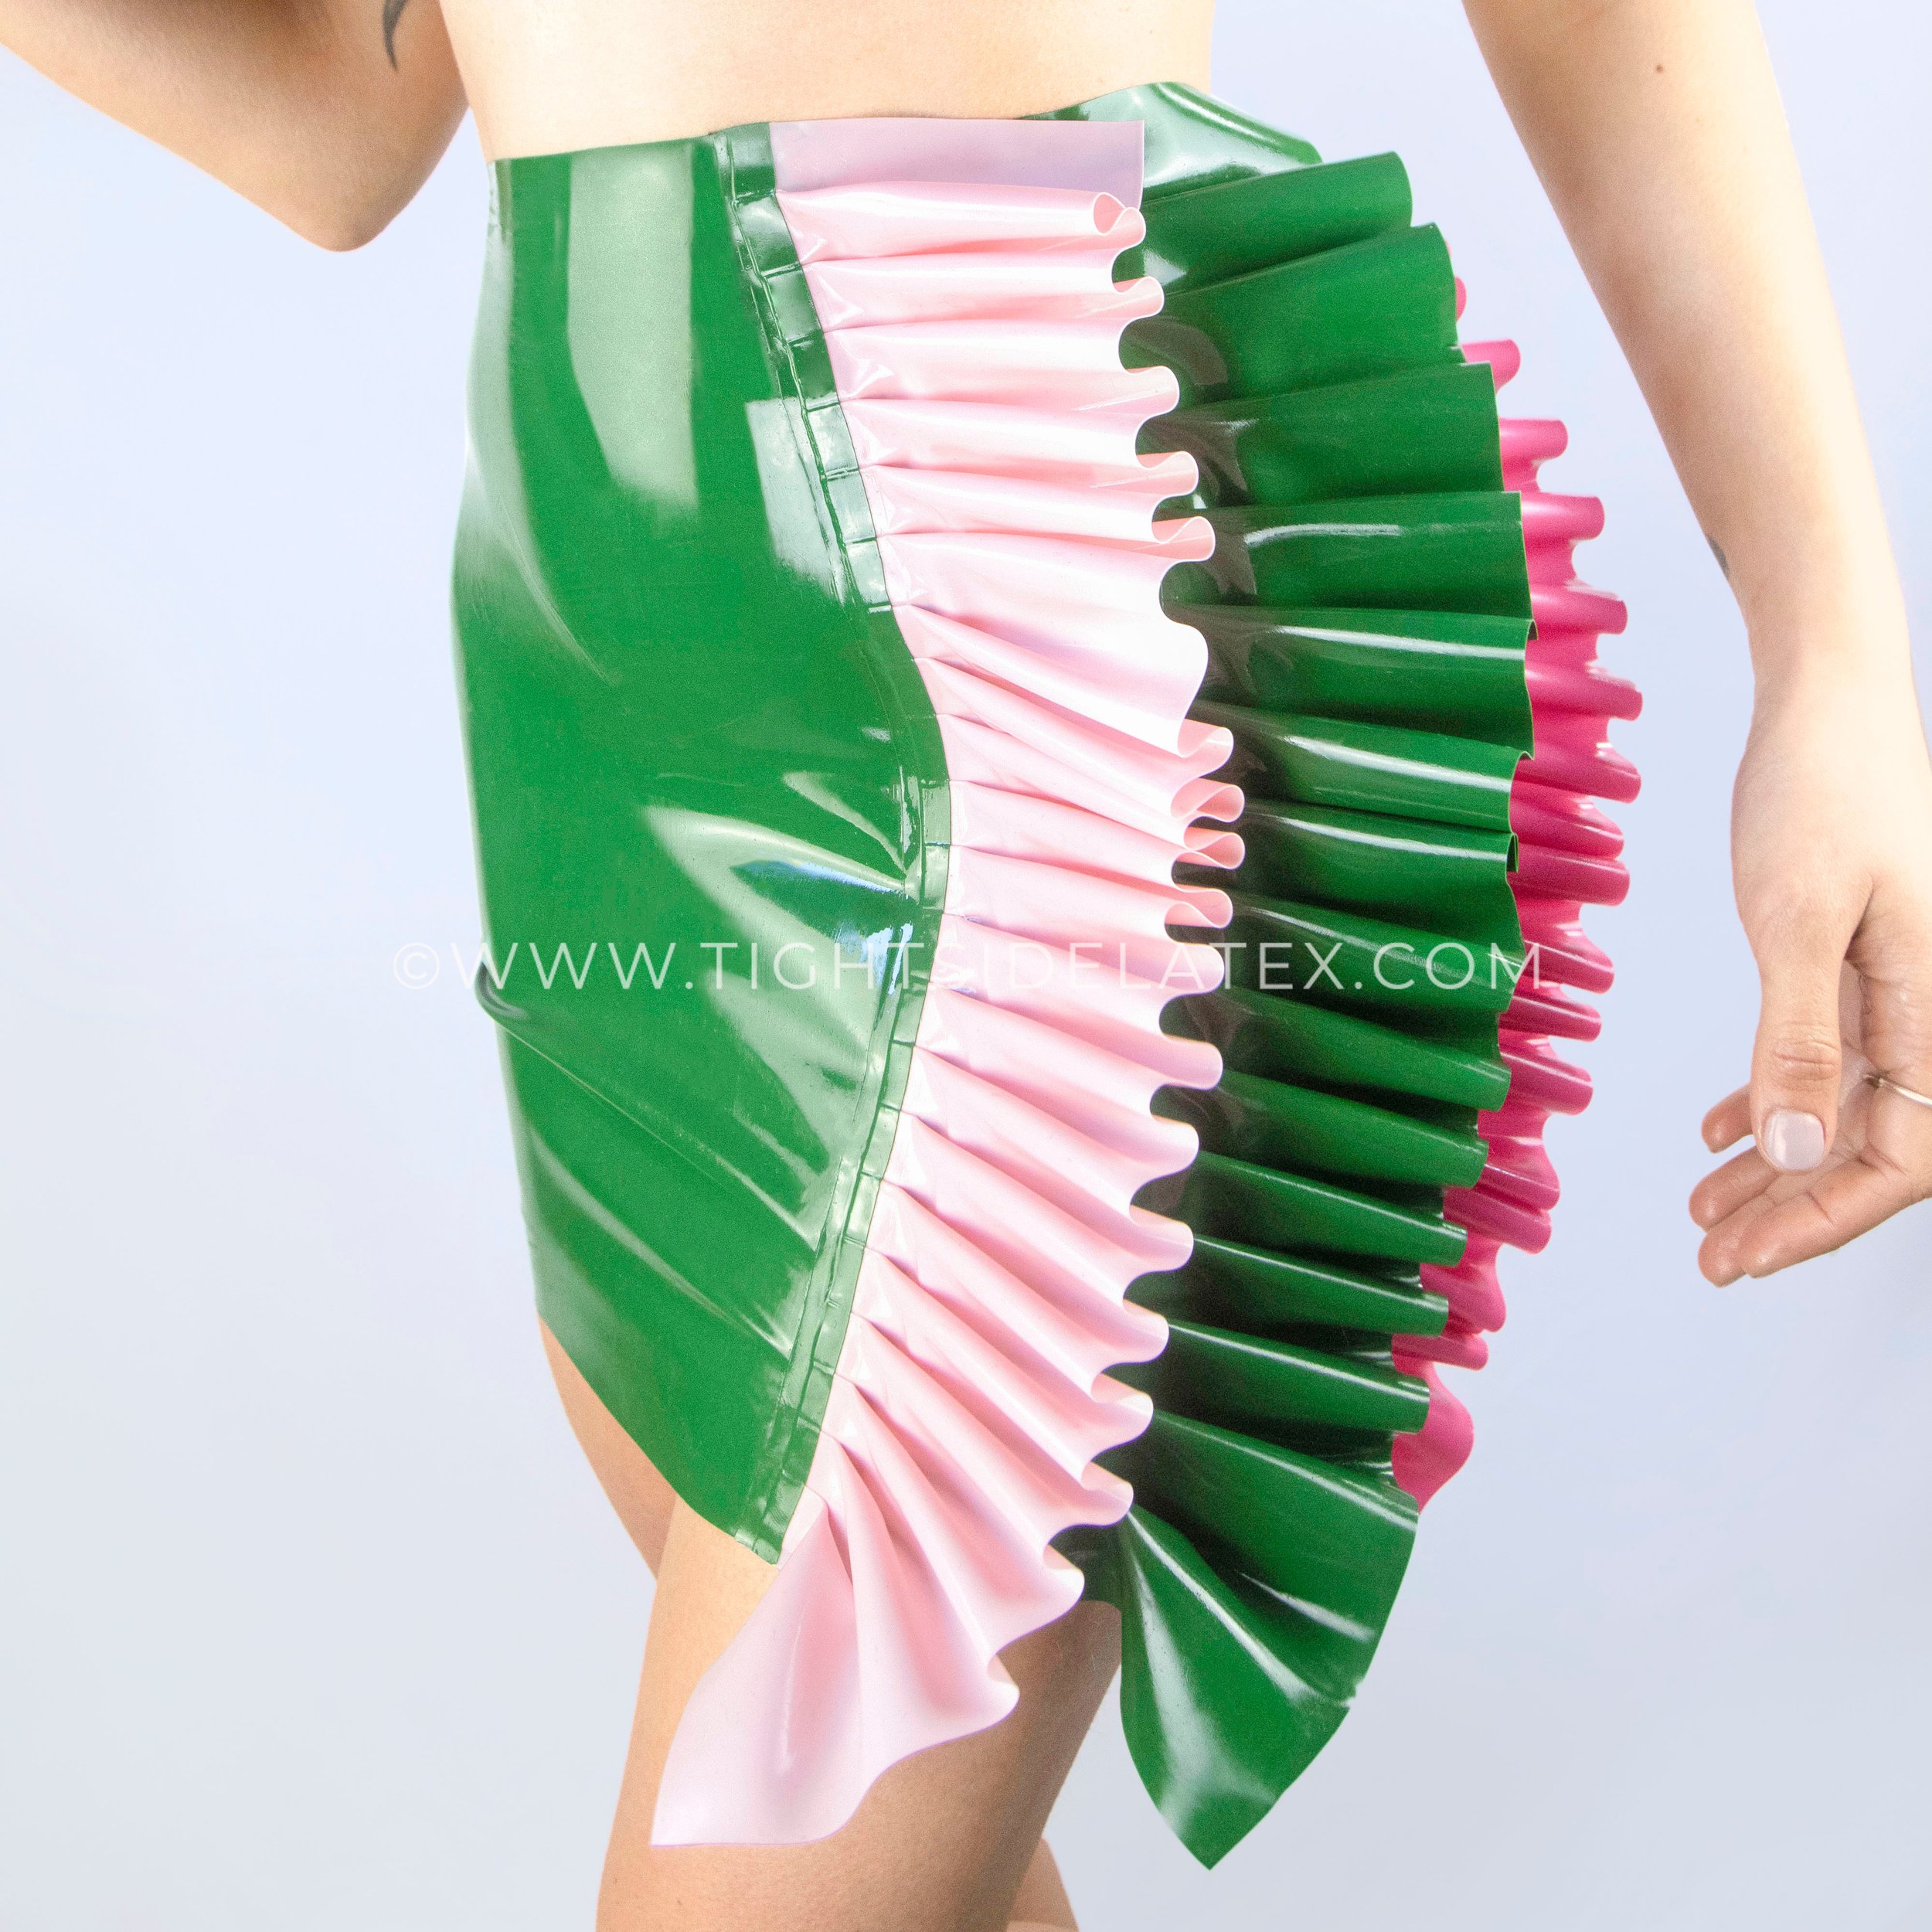 Latex plate skirt - Versatile latex skirt to combine